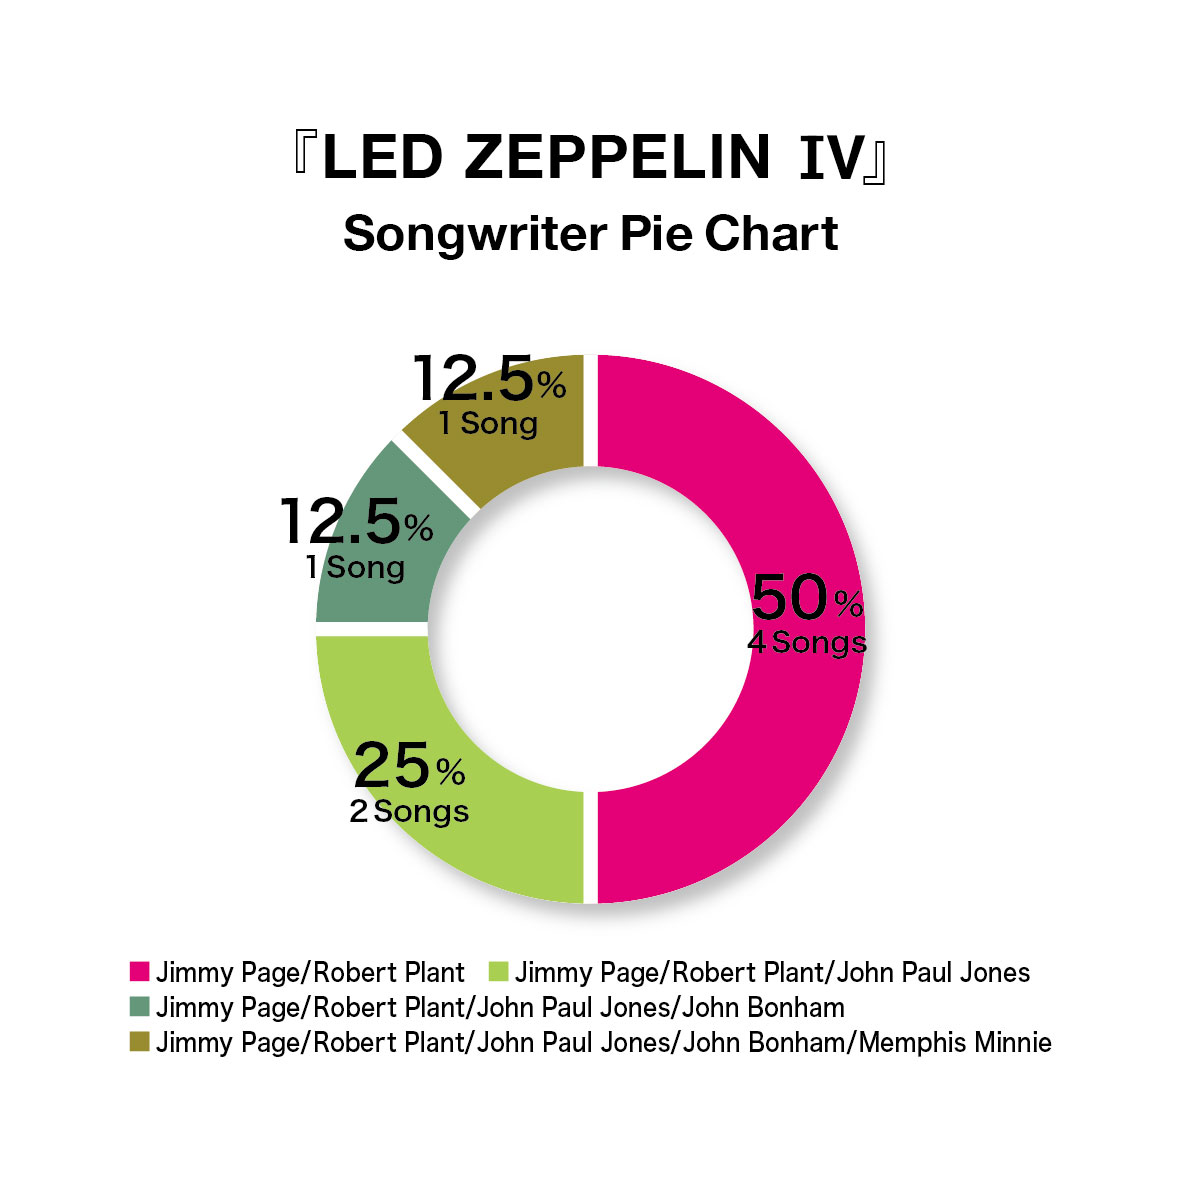 LED ZEPPELIN IVのソングライターについての円グラフ